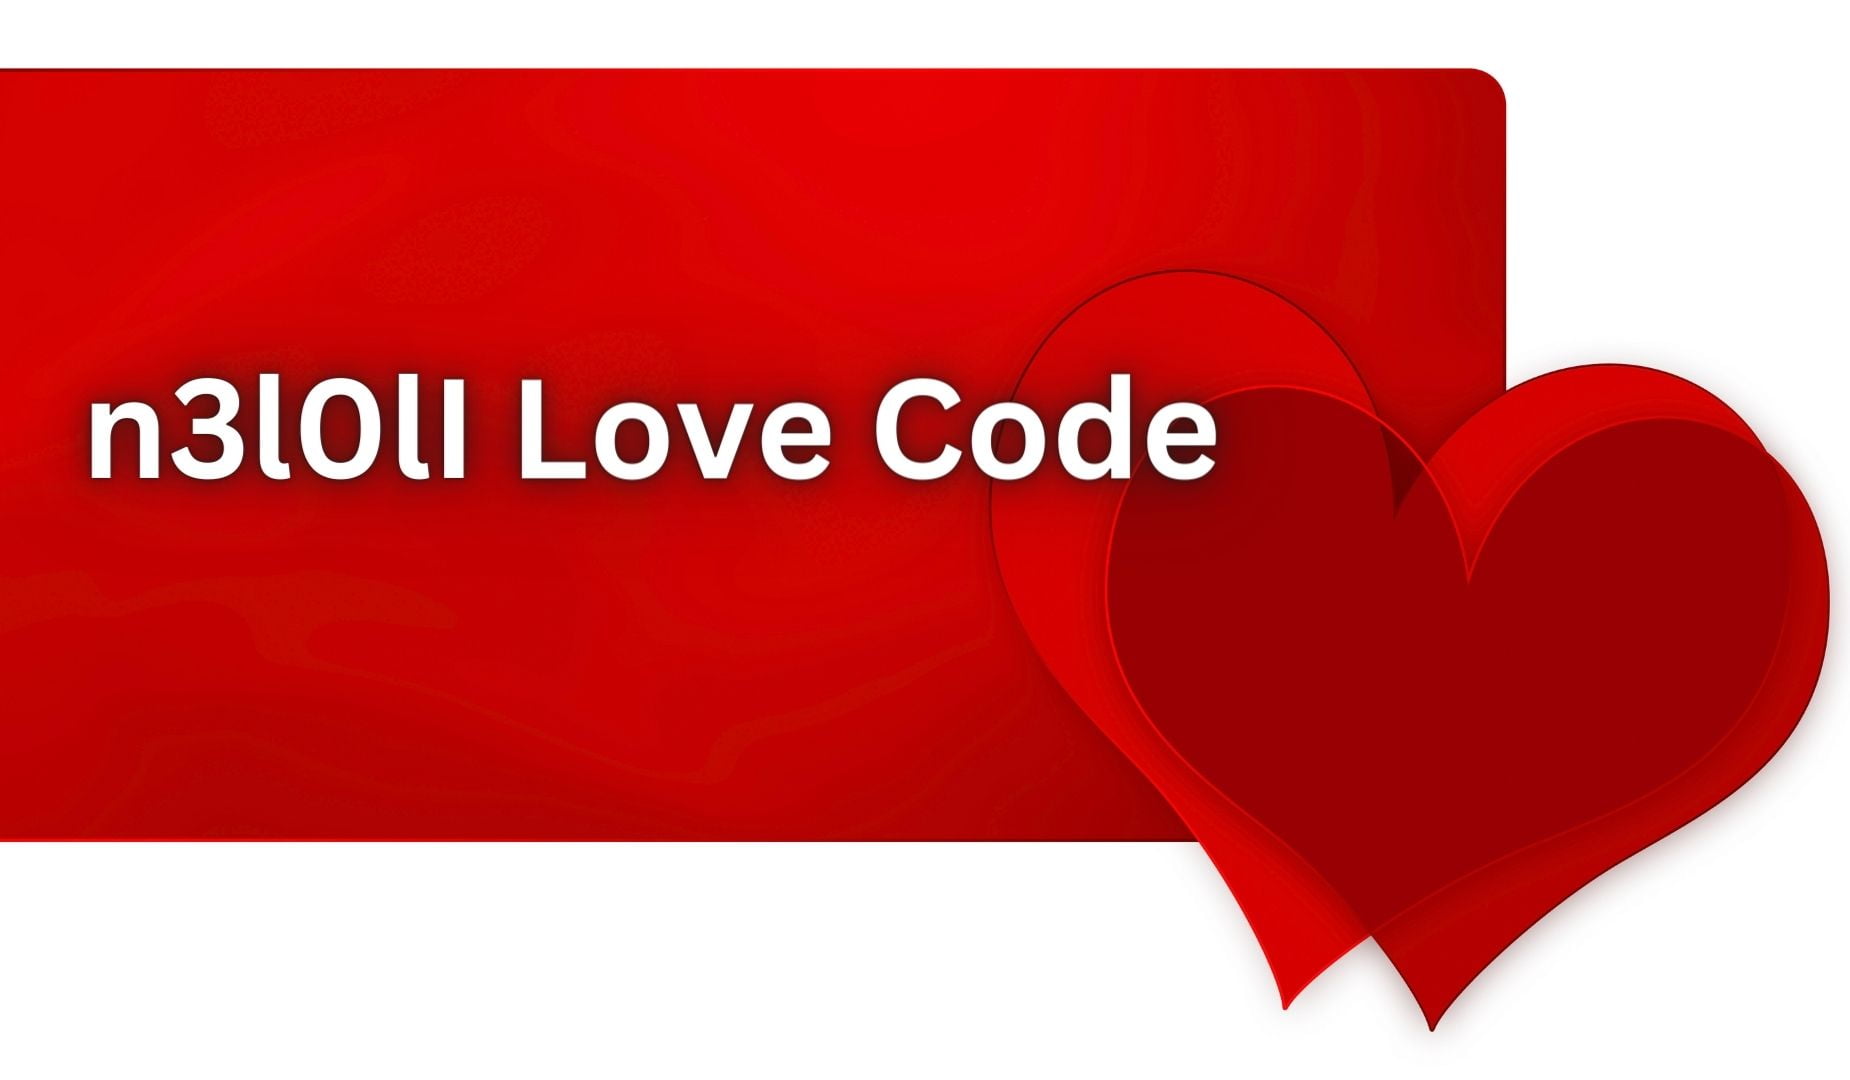 Люблю тебя на математическом языке. I Love code. Код i Love you в цифрах. I Love you to code. Лов код